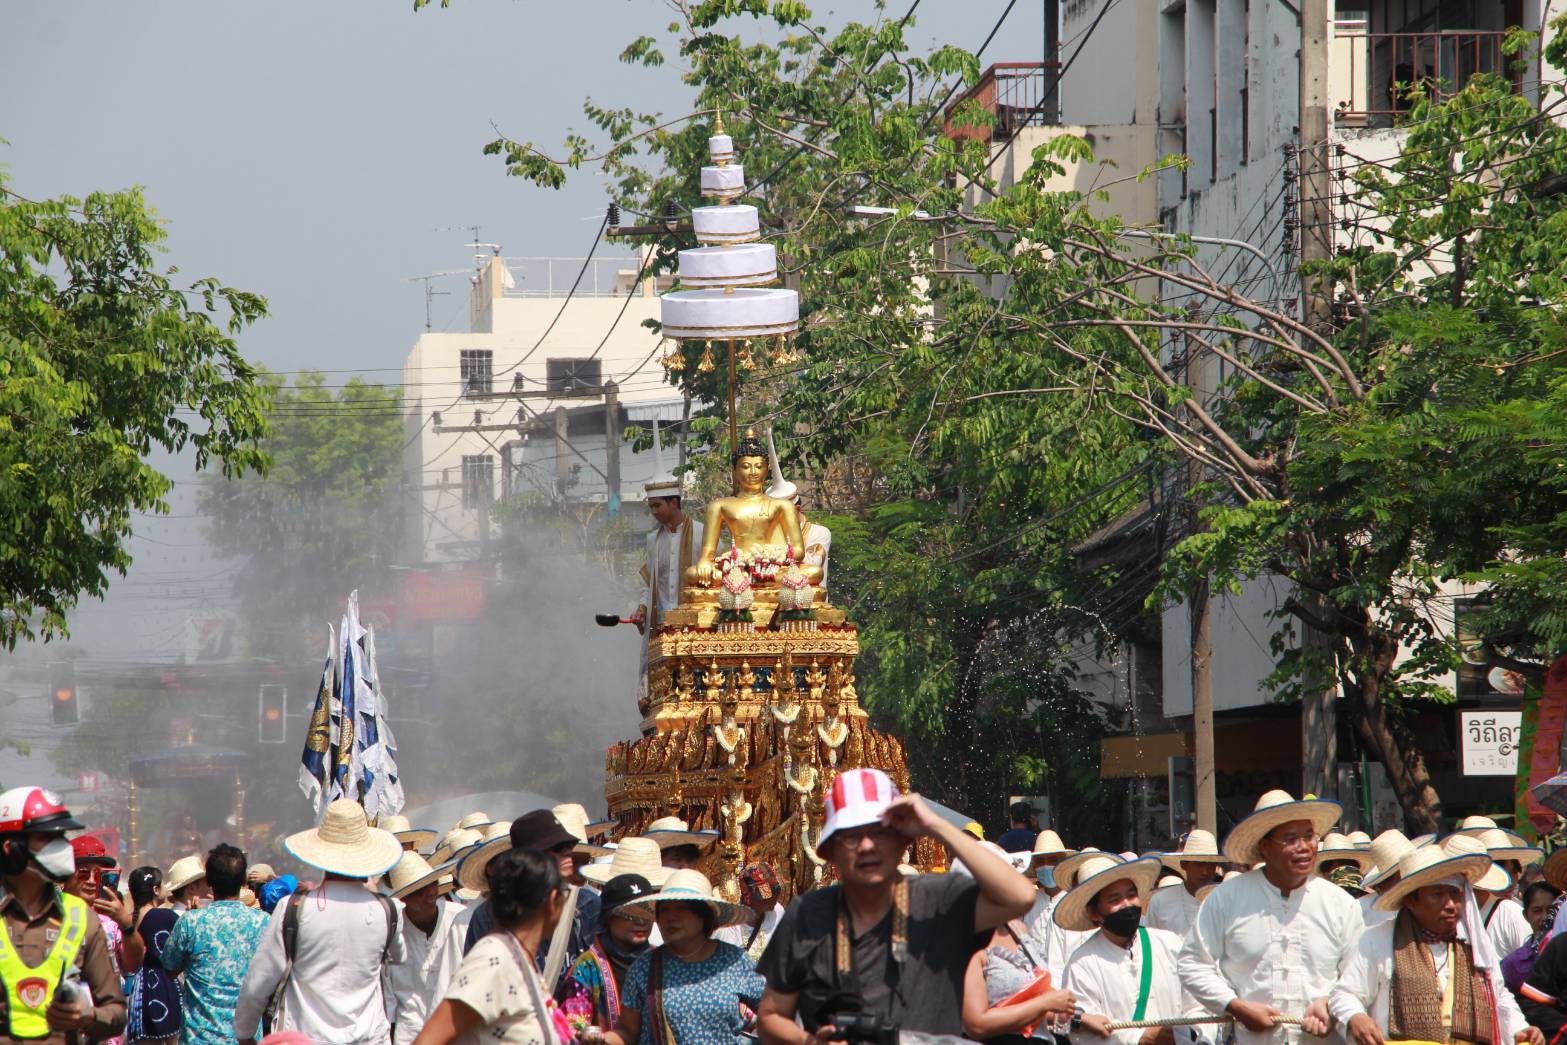 ประชาชนและนักท่องเที่ยว ร่วมสรงน้ำพระพุทธรูปสำคัญของจังหวัดเชียงใหม่ในวันสงกรานต์